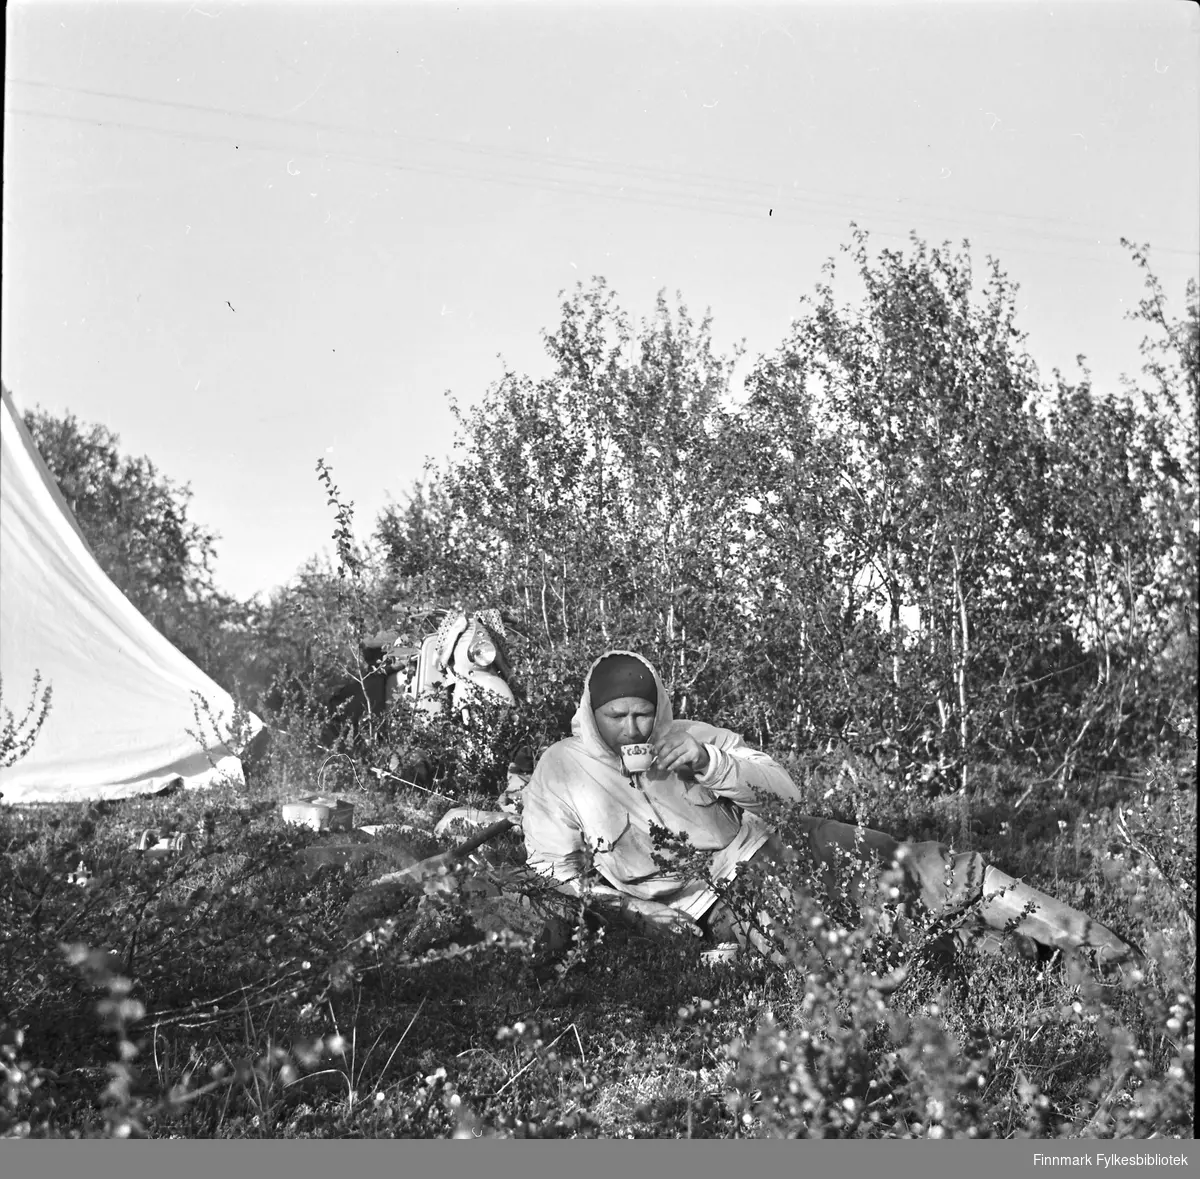 Scooterferie 1955 i et sted i Finnmark, muligens i Finnmarksvidda. Campingliv med mygg.